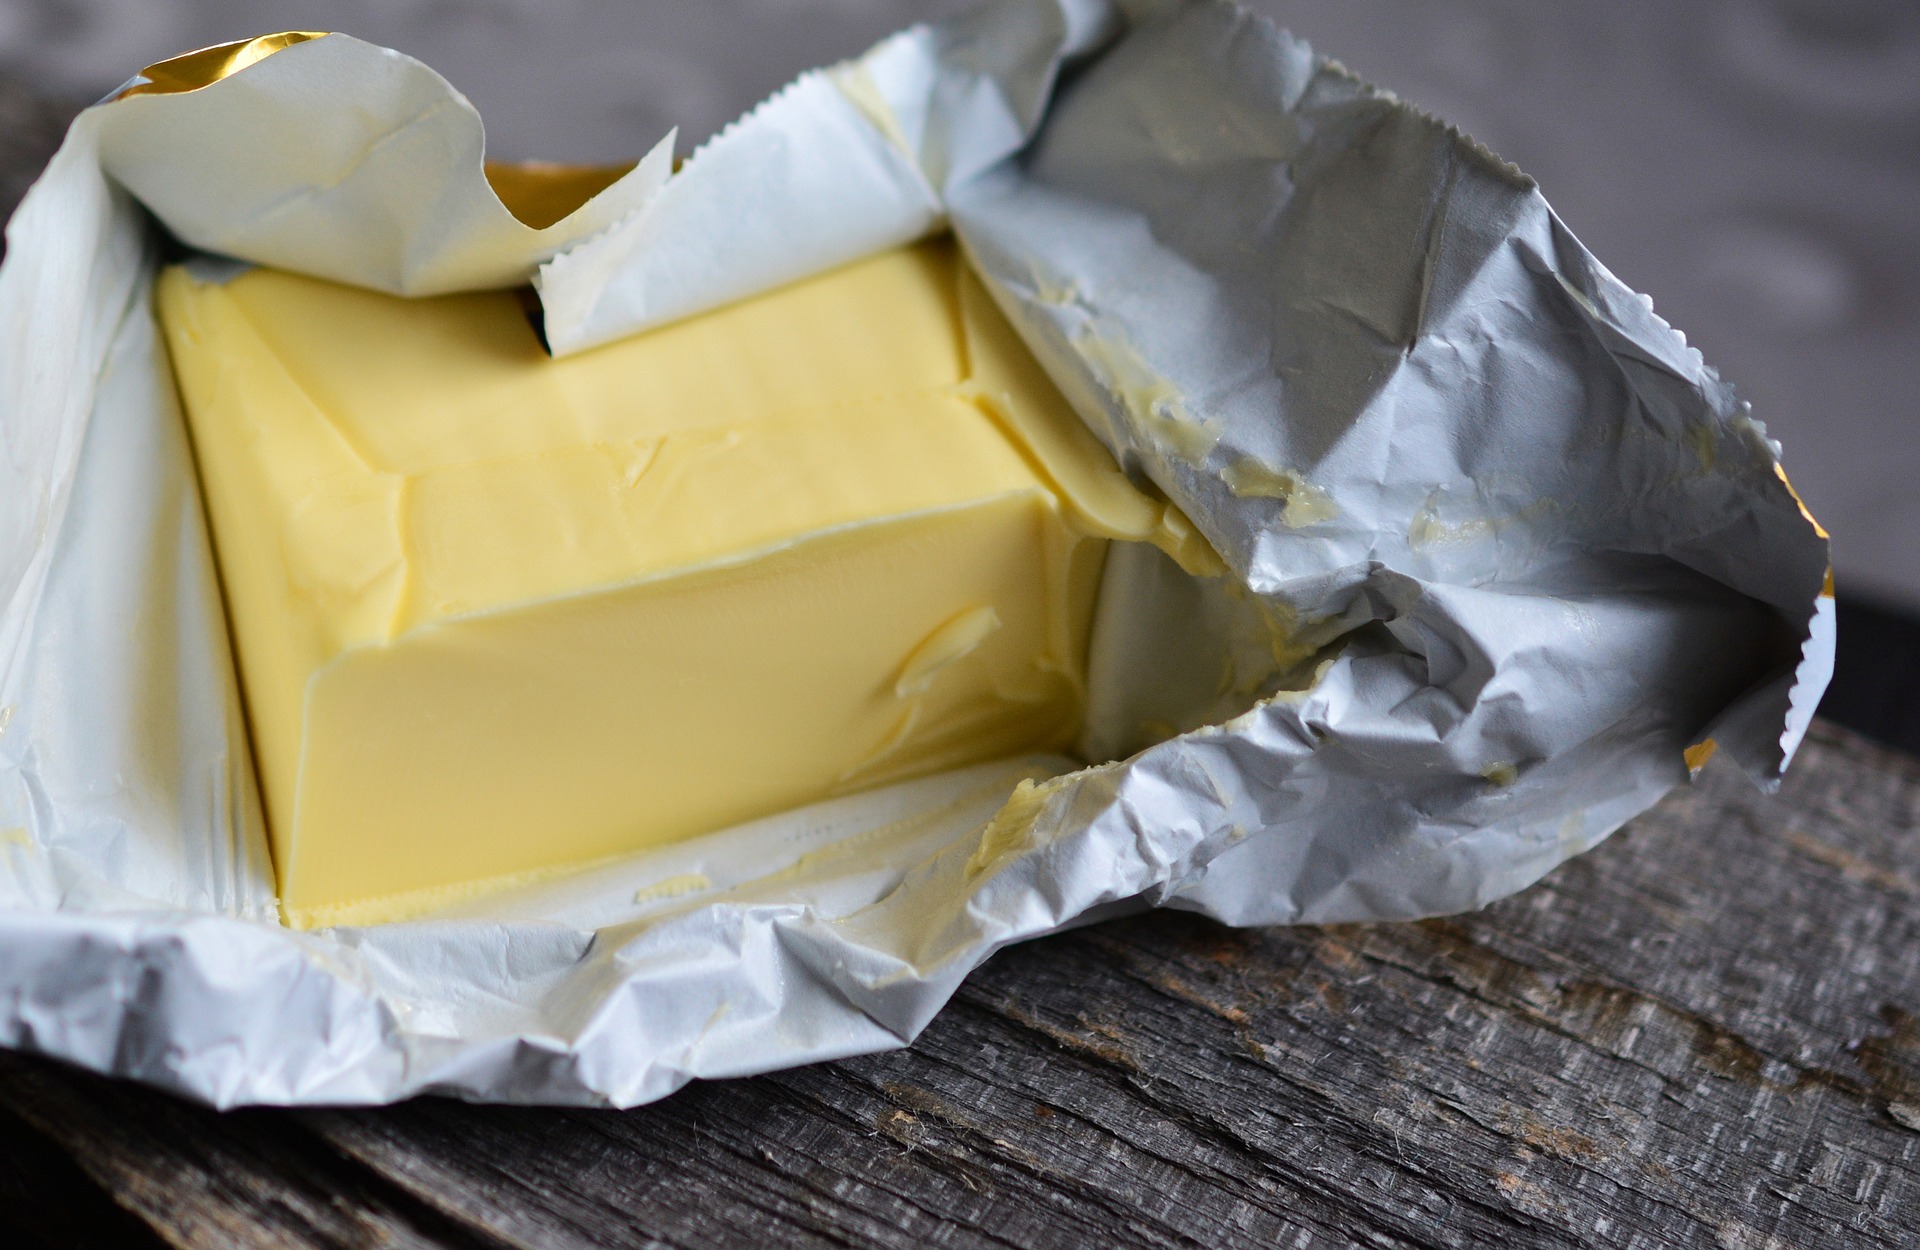 V českých obchodech se šíří podvodné praktiky s máslem. Zákazníci si doma uvědomují, že byli podvedeni.